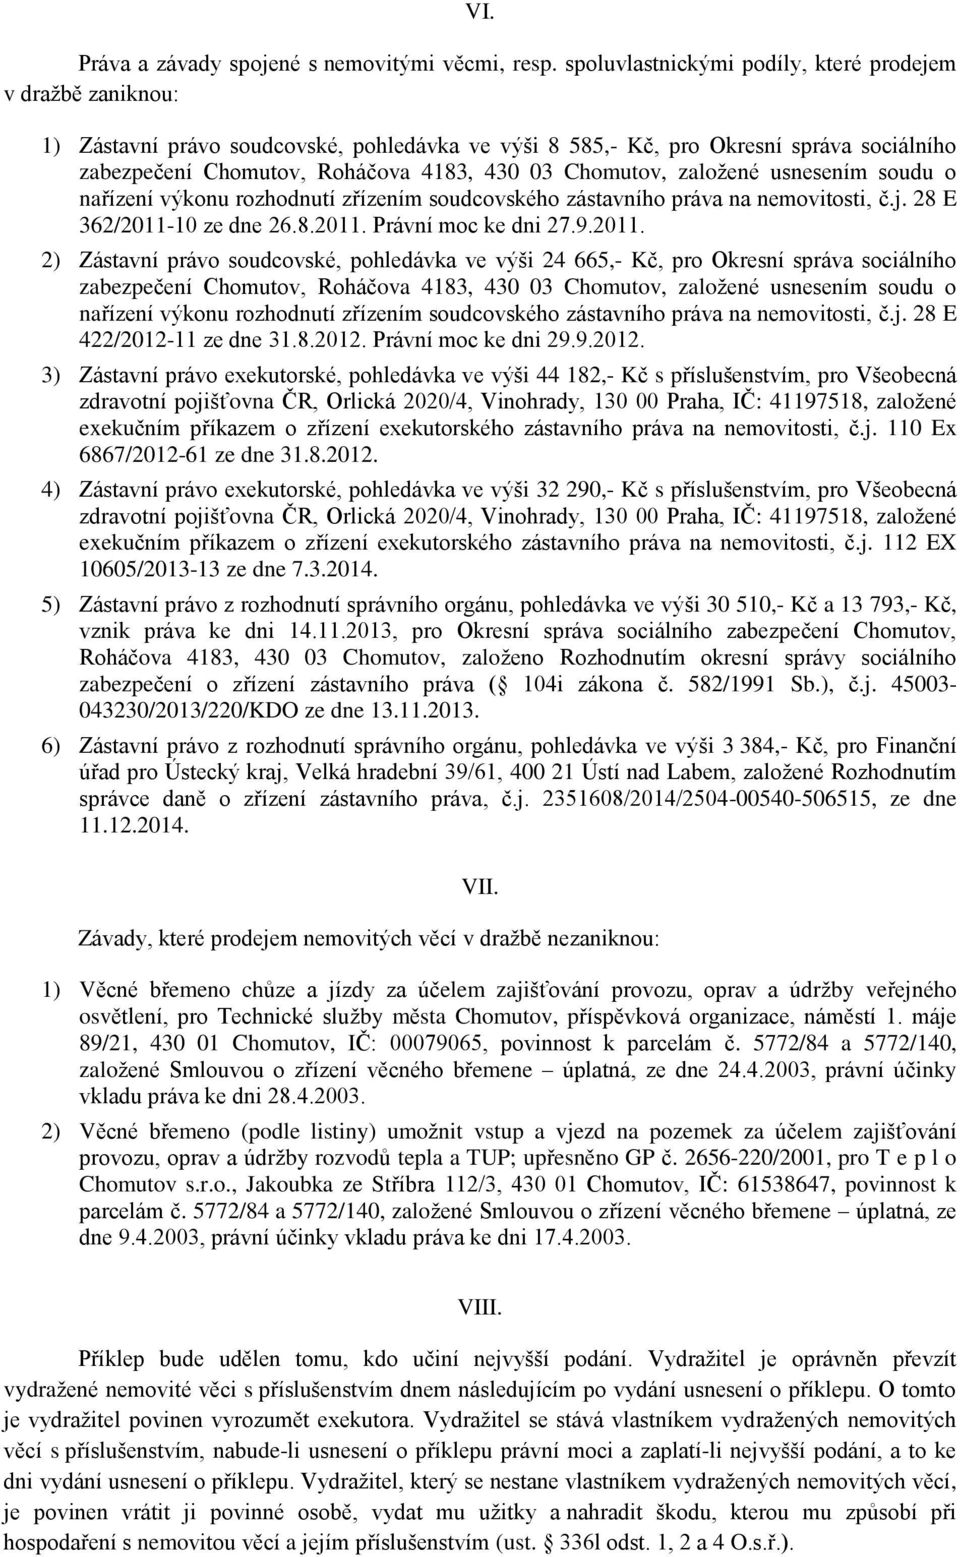 Chomutov, založené usnesením soudu o nařízení výkonu rozhodnutí zřízením soudcovského zástavního práva na nemovitosti, č.j. 28 E 362/2011-